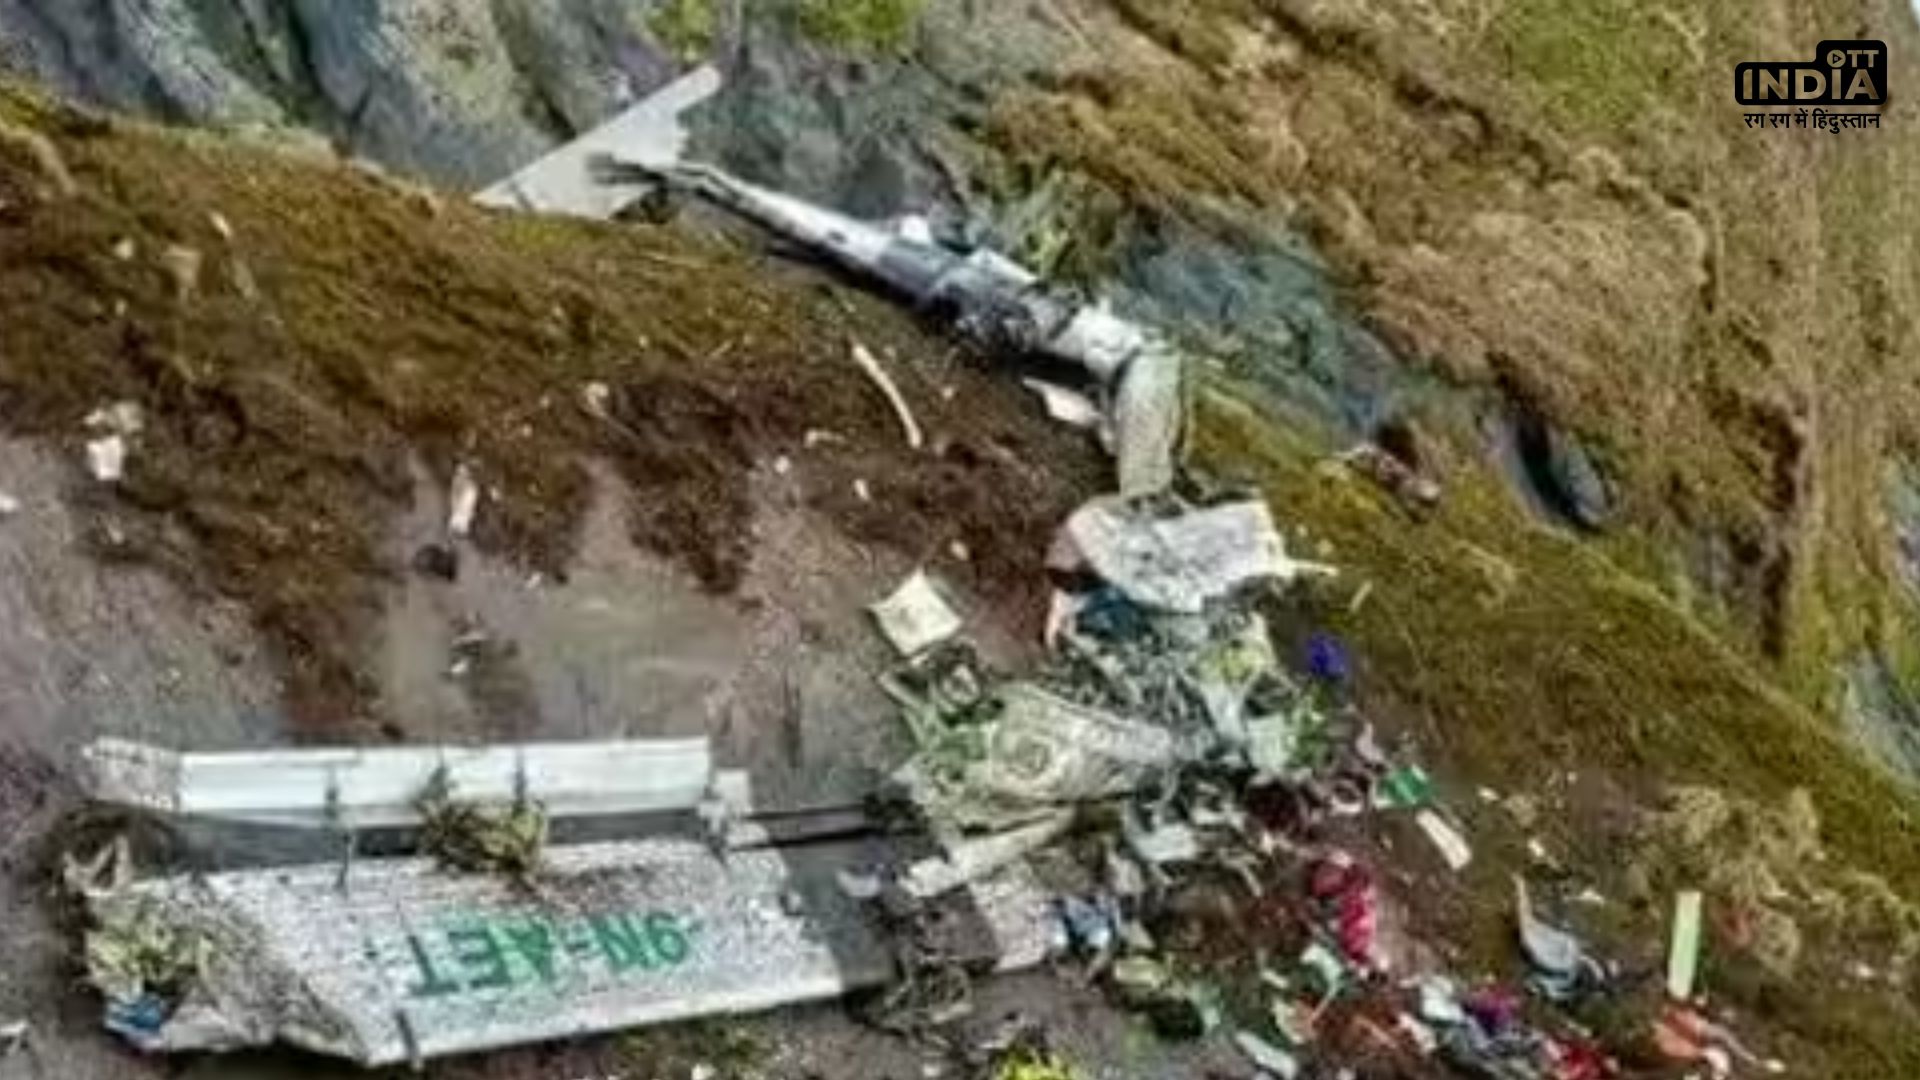 Nepal News: नेपाल सड़क दुर्घटना में 6 भारतीय तीर्थयात्री सहित 7 लोगों की मौत